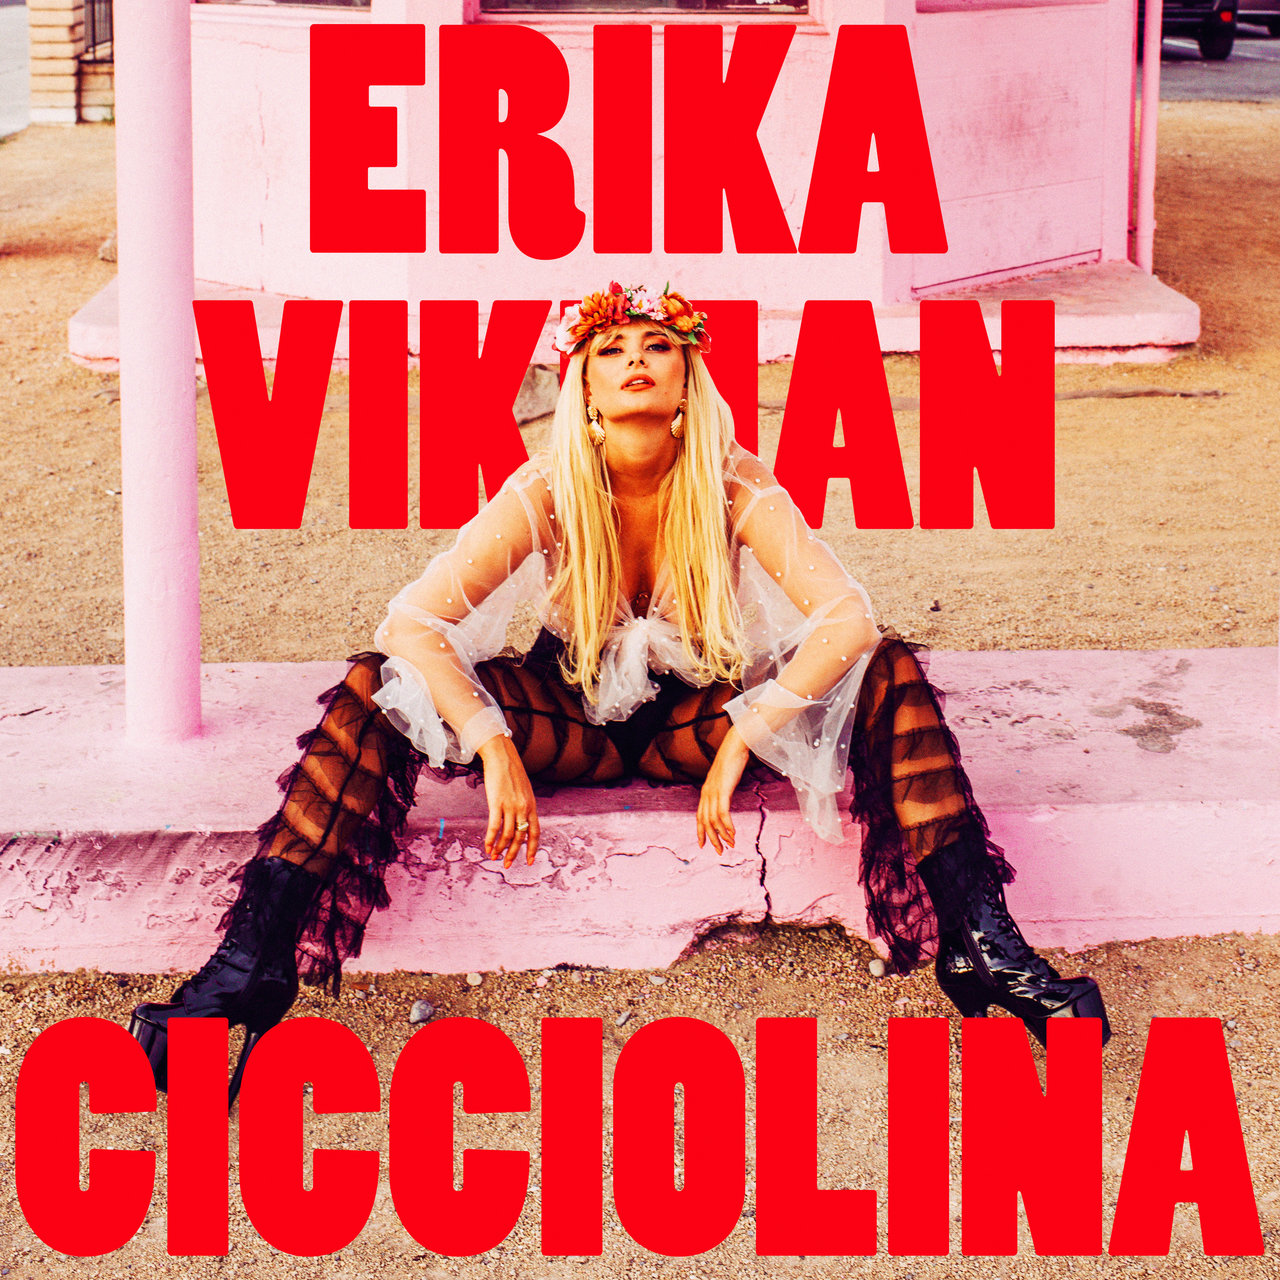 Erika Vikman — Cicciolina cover artwork